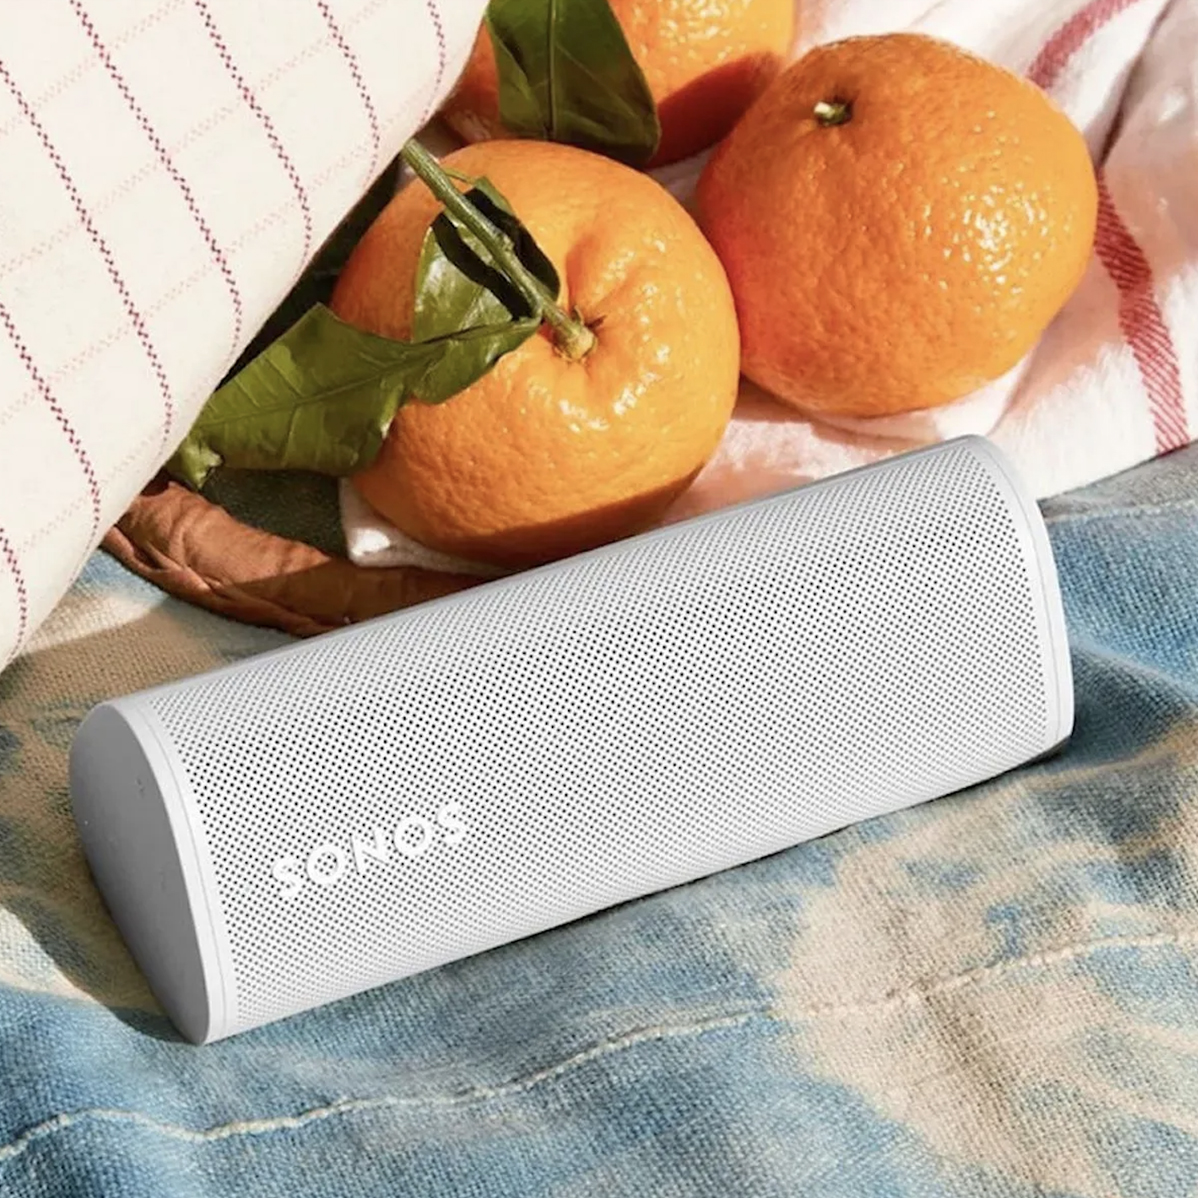 Sonos roam speaker with oranges